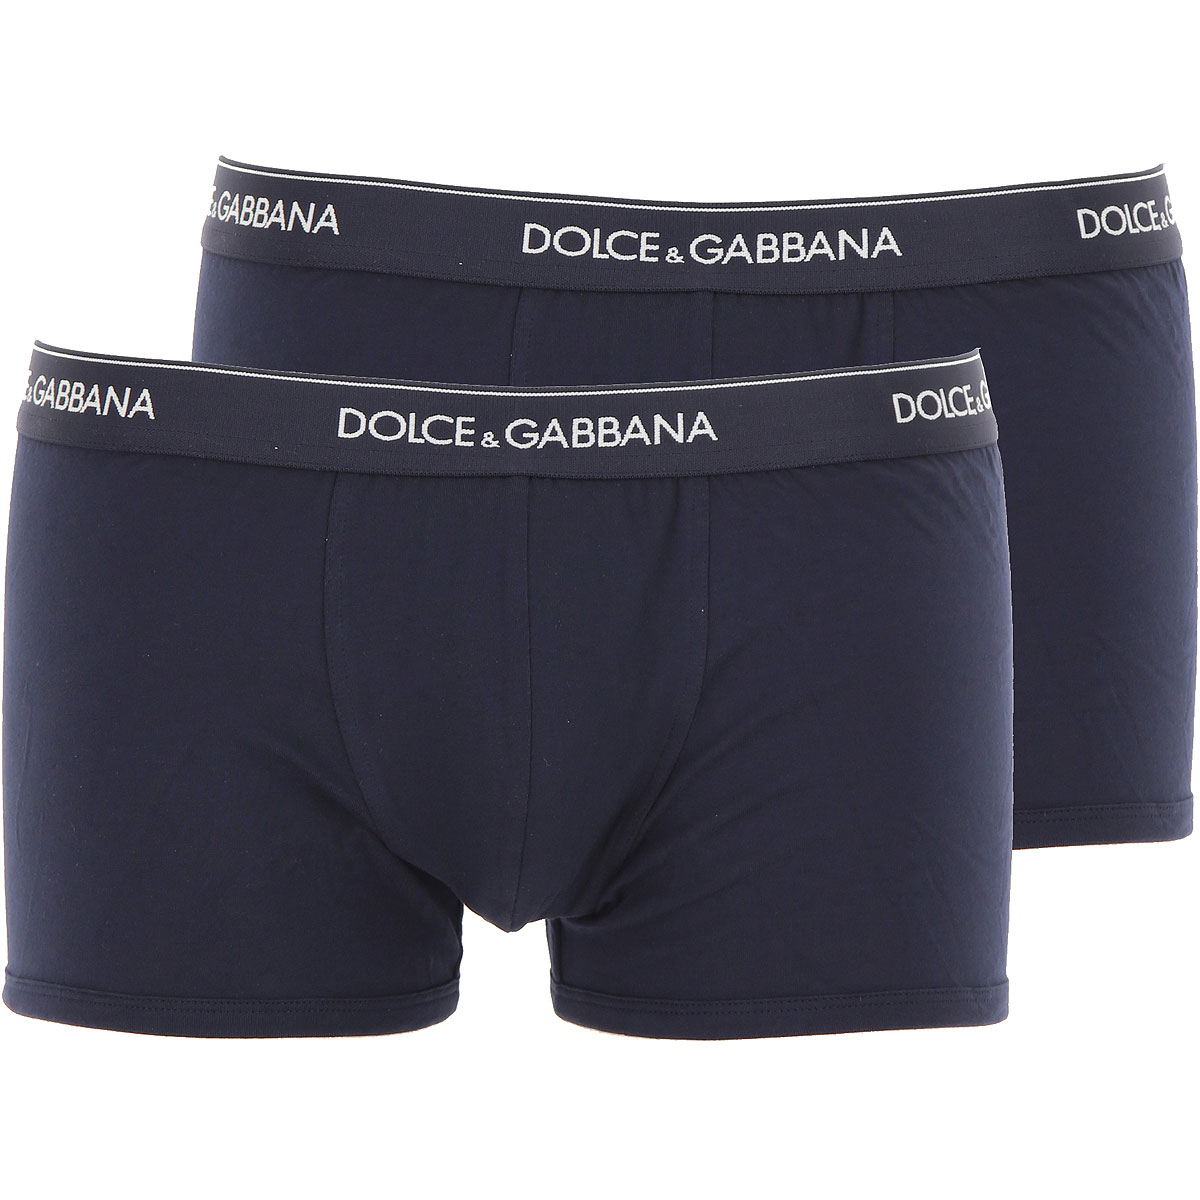 Mens Underwear Dolce & Gabbana, Style code: cont-m9c07j-fugiw